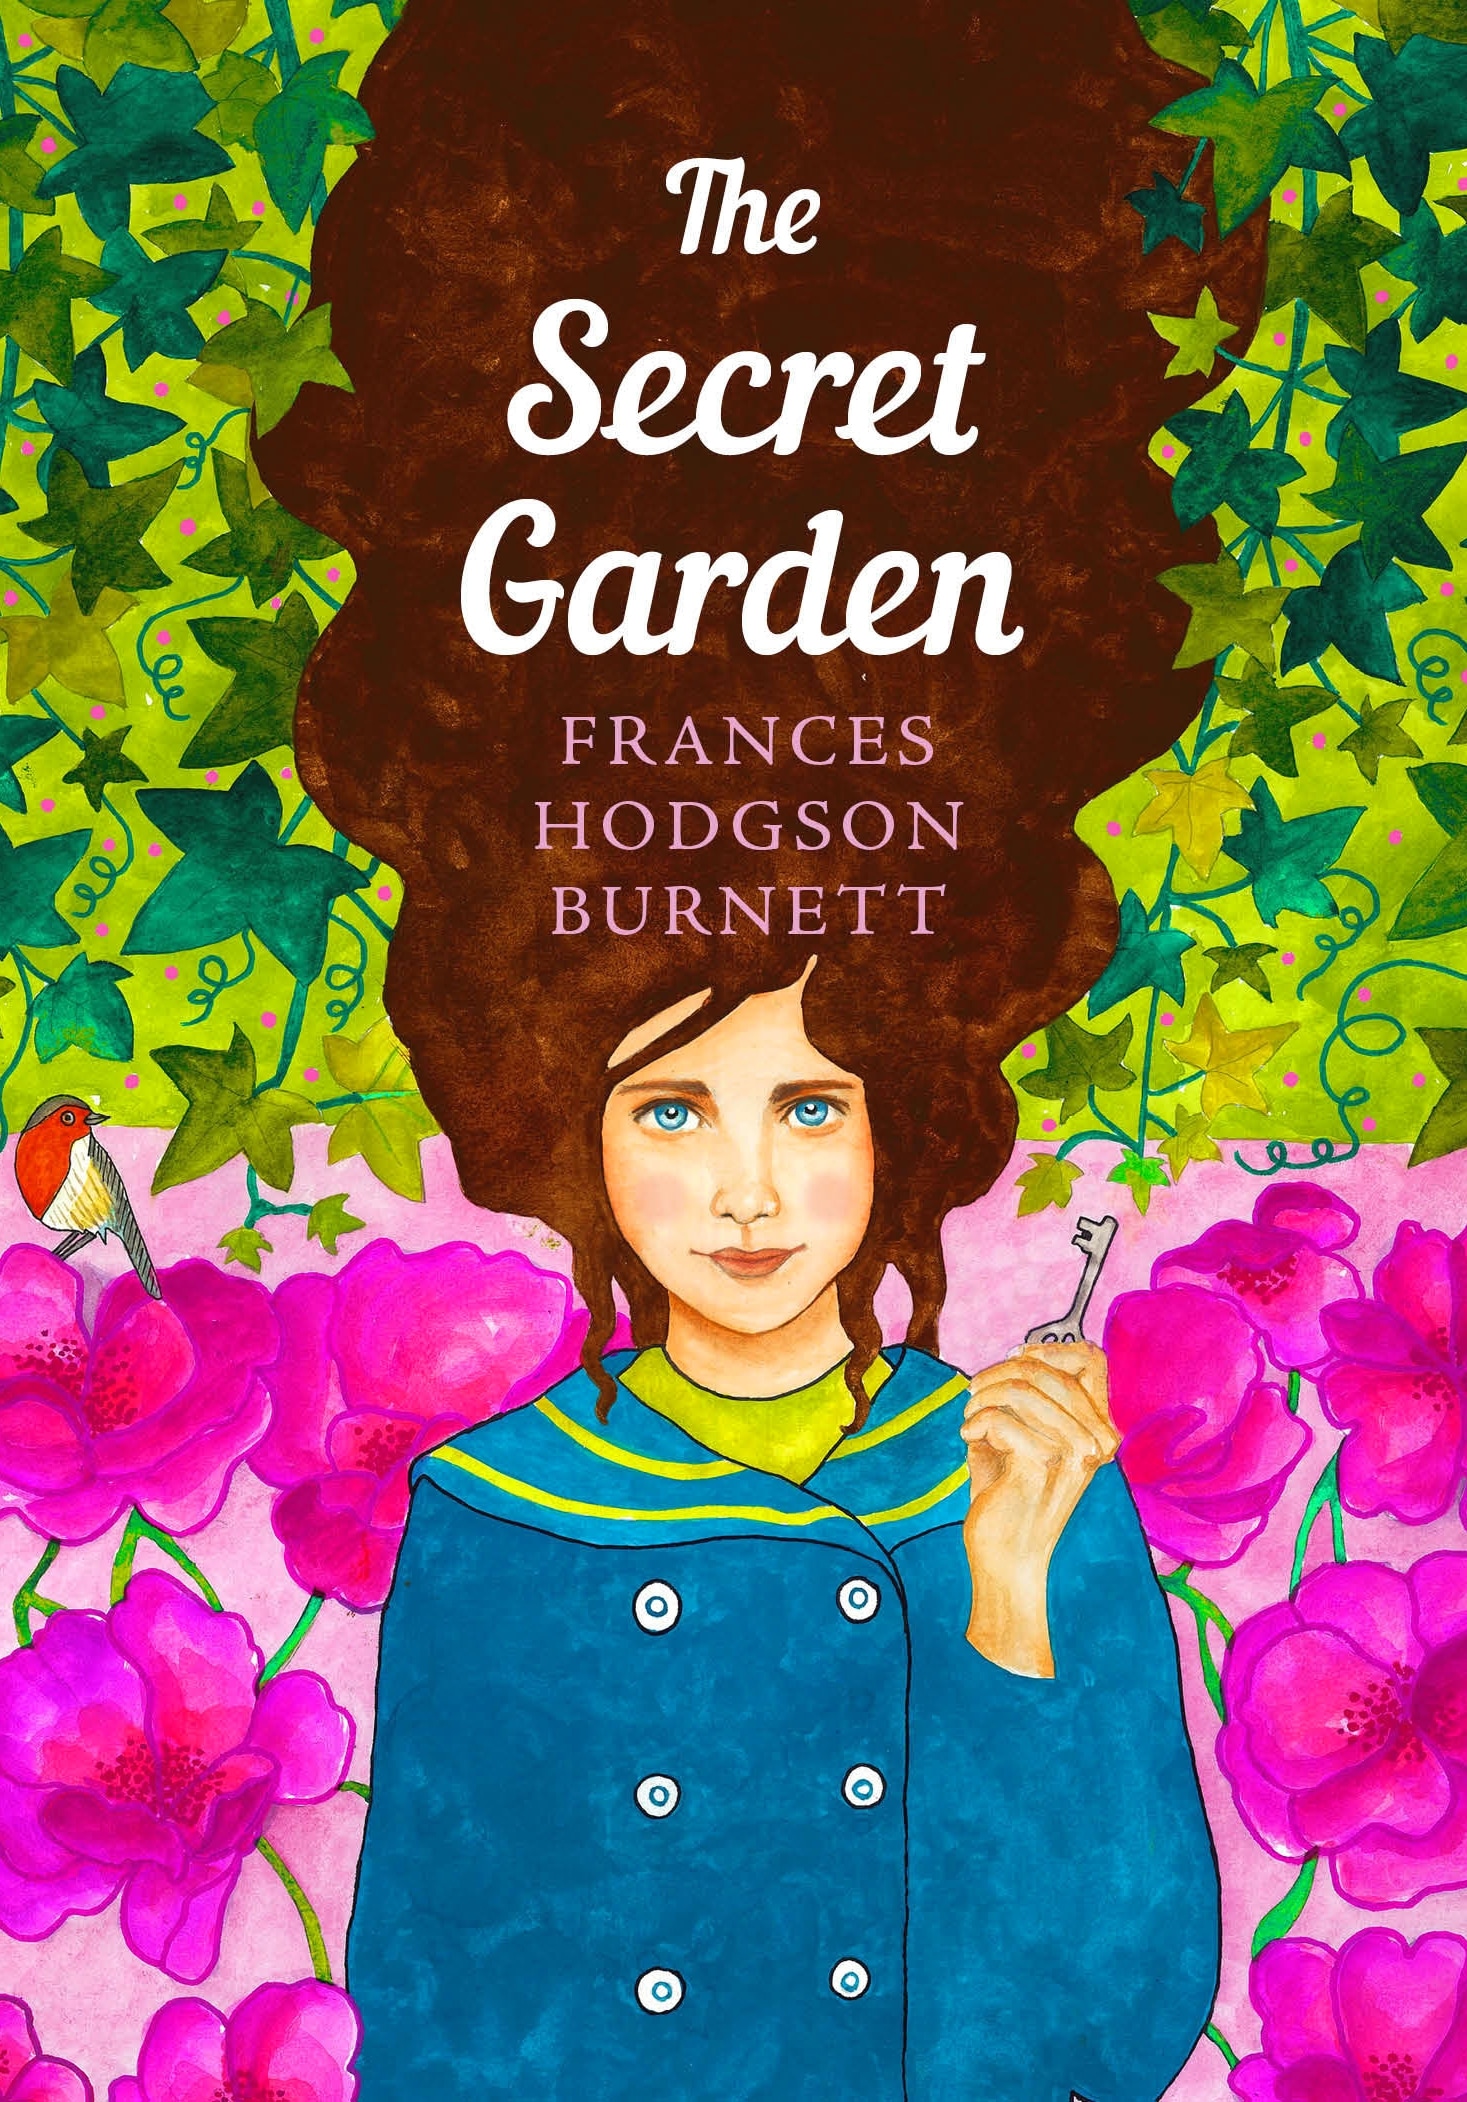 Book “The Secret Garden” by Frances Hodgson Burnett — March 3, 2022